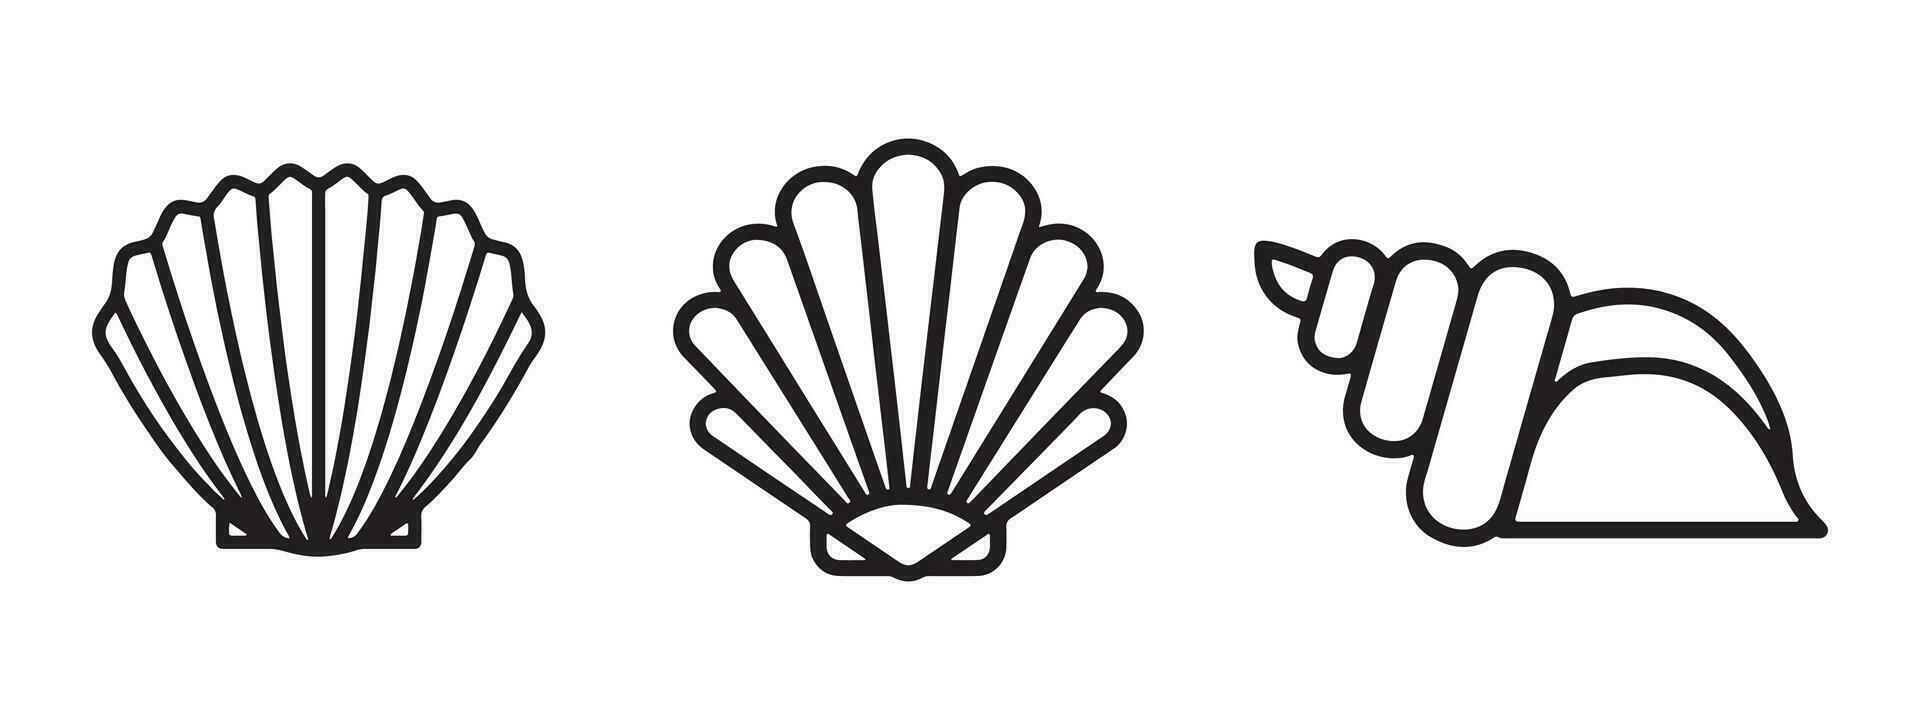 Muscheln Satz. Sammlung von Perle Schale Logo Symbol Design. einstellen von Silhouette Schale Symbole Vektor Illustration.